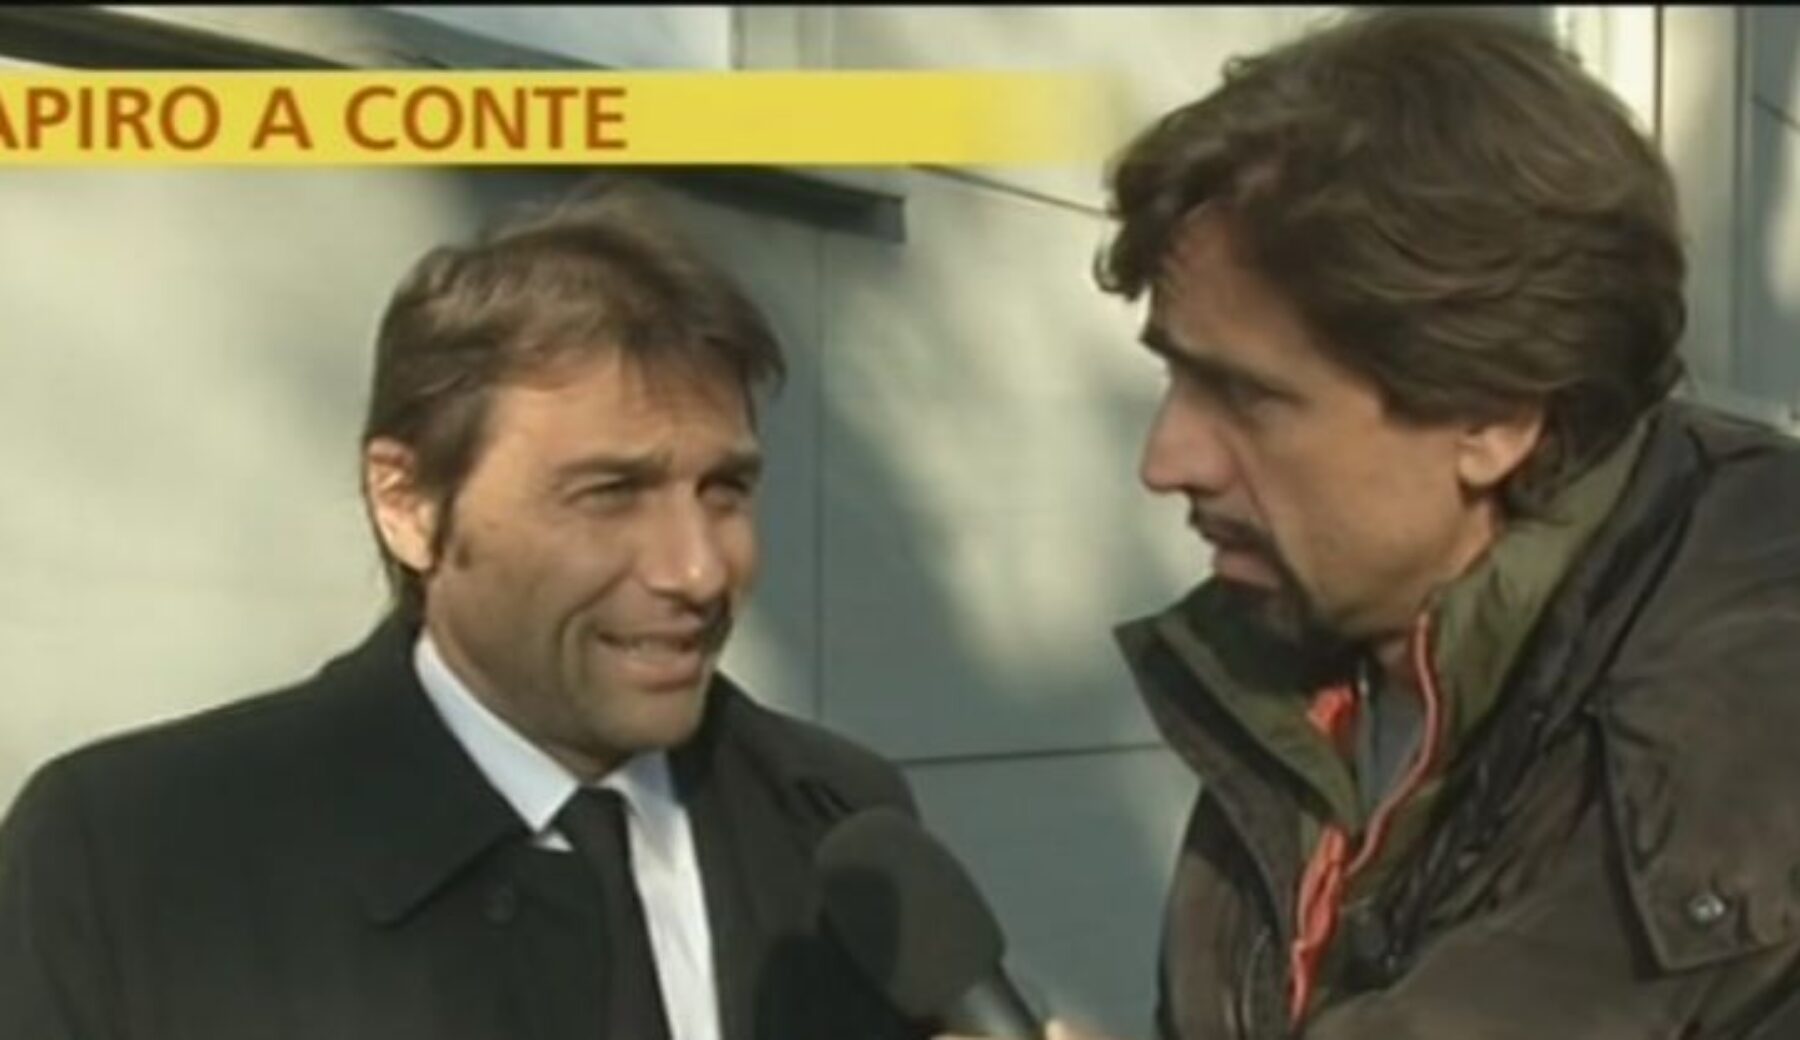 Antonio Conte ha firmato con l’Inter, obiettivo Champions League